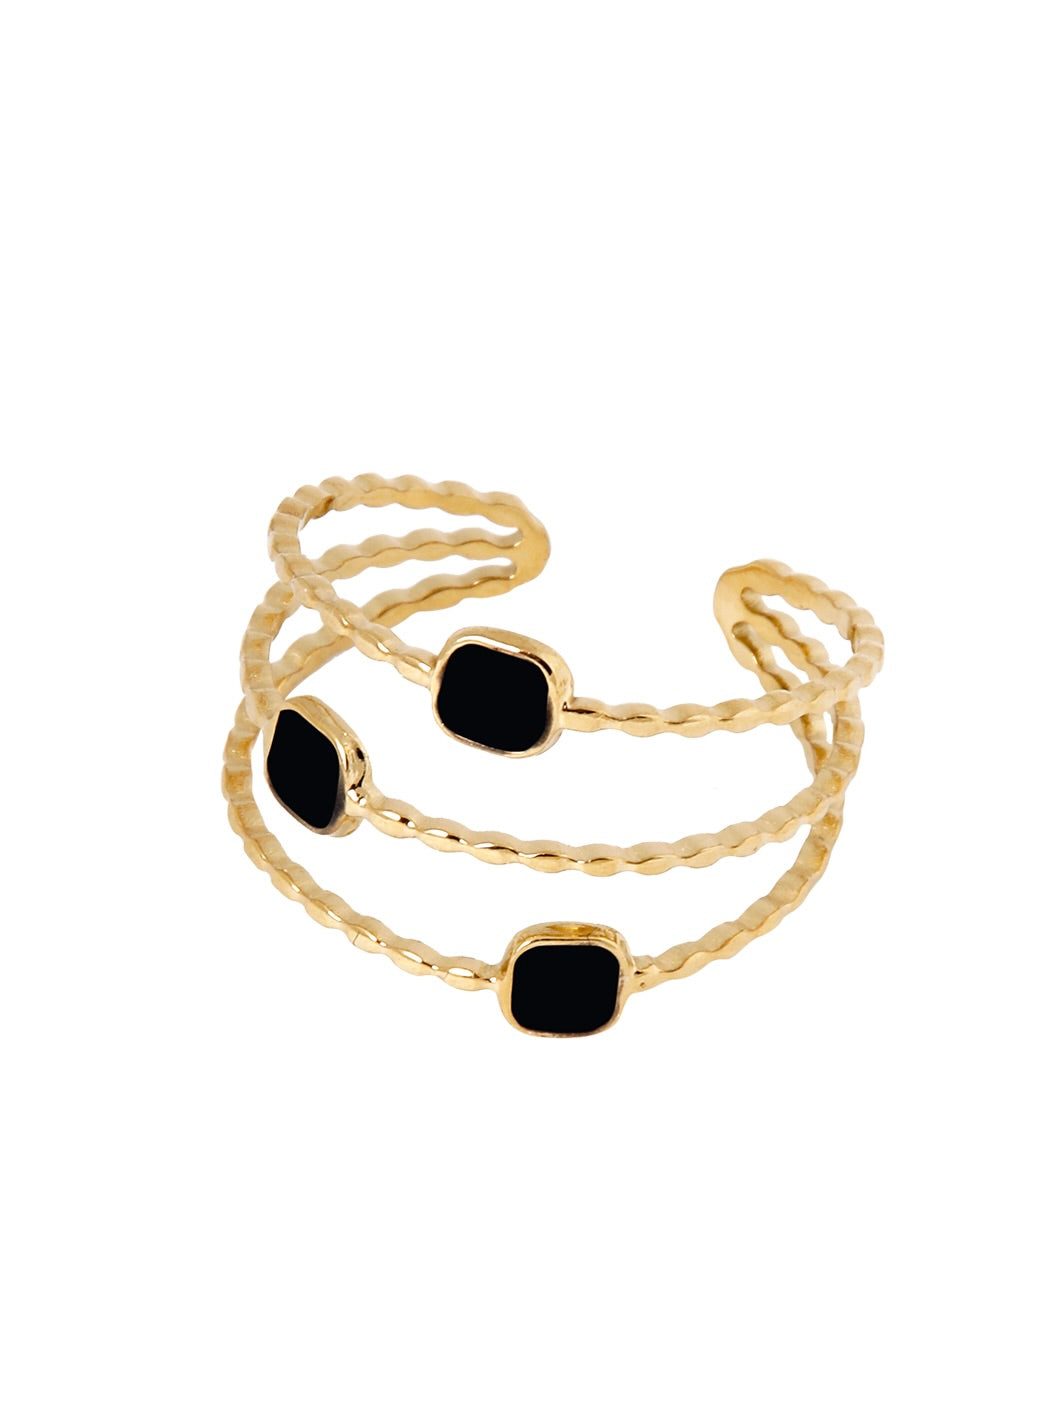 Ring met 3 steentjes zwart - LEEF mode en accessoires